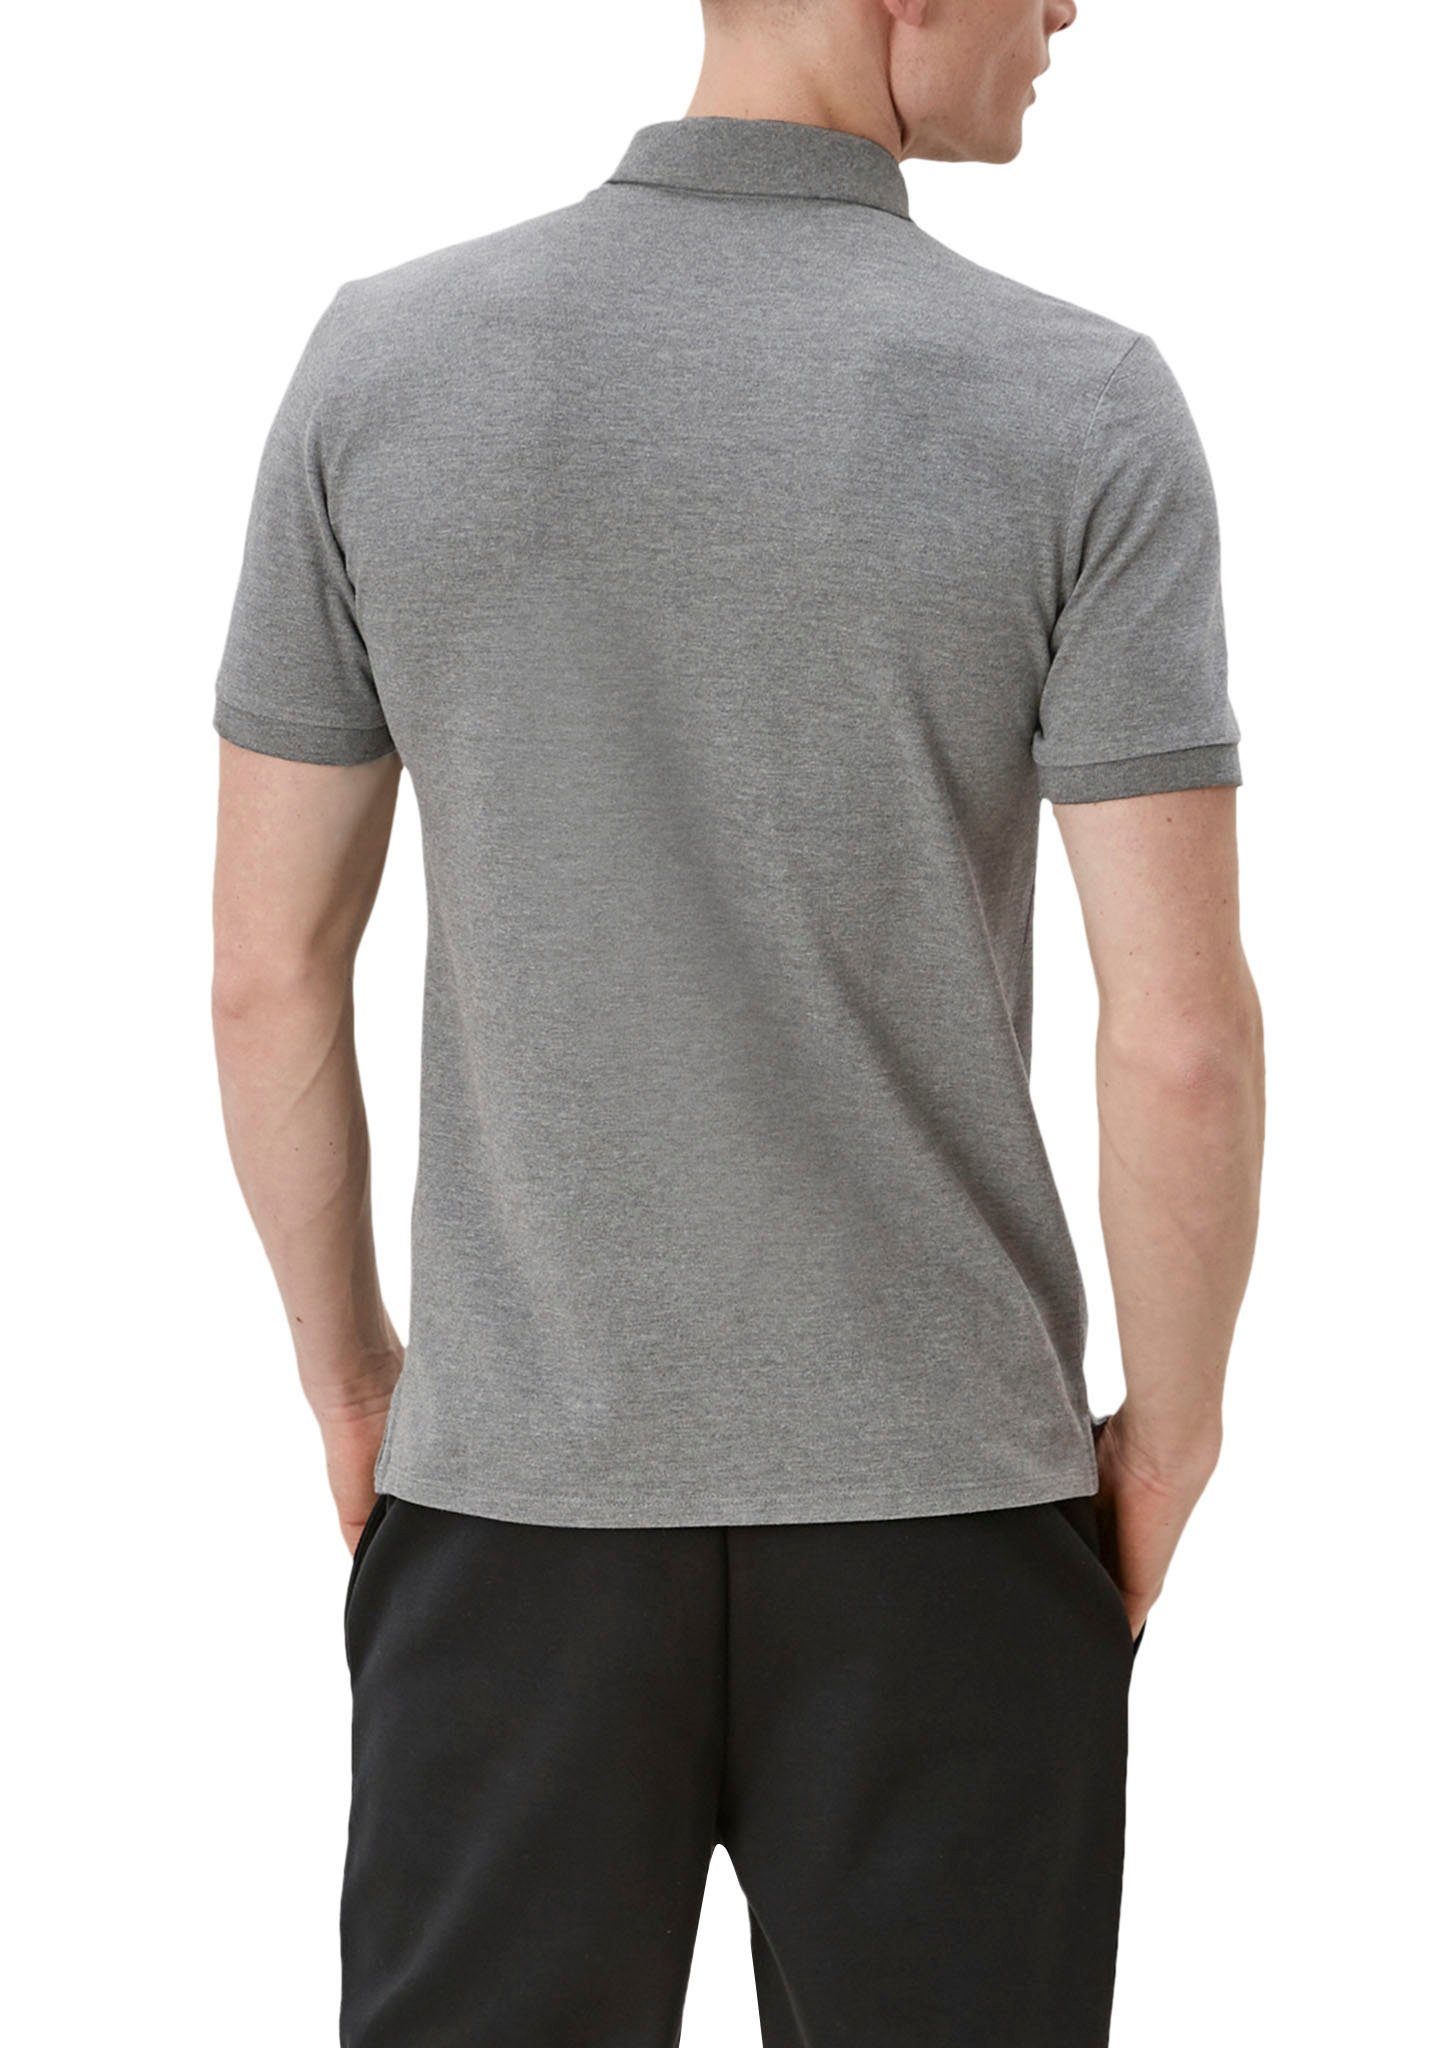 den Einschnitte Seiten Poloshirt grey/black an QS